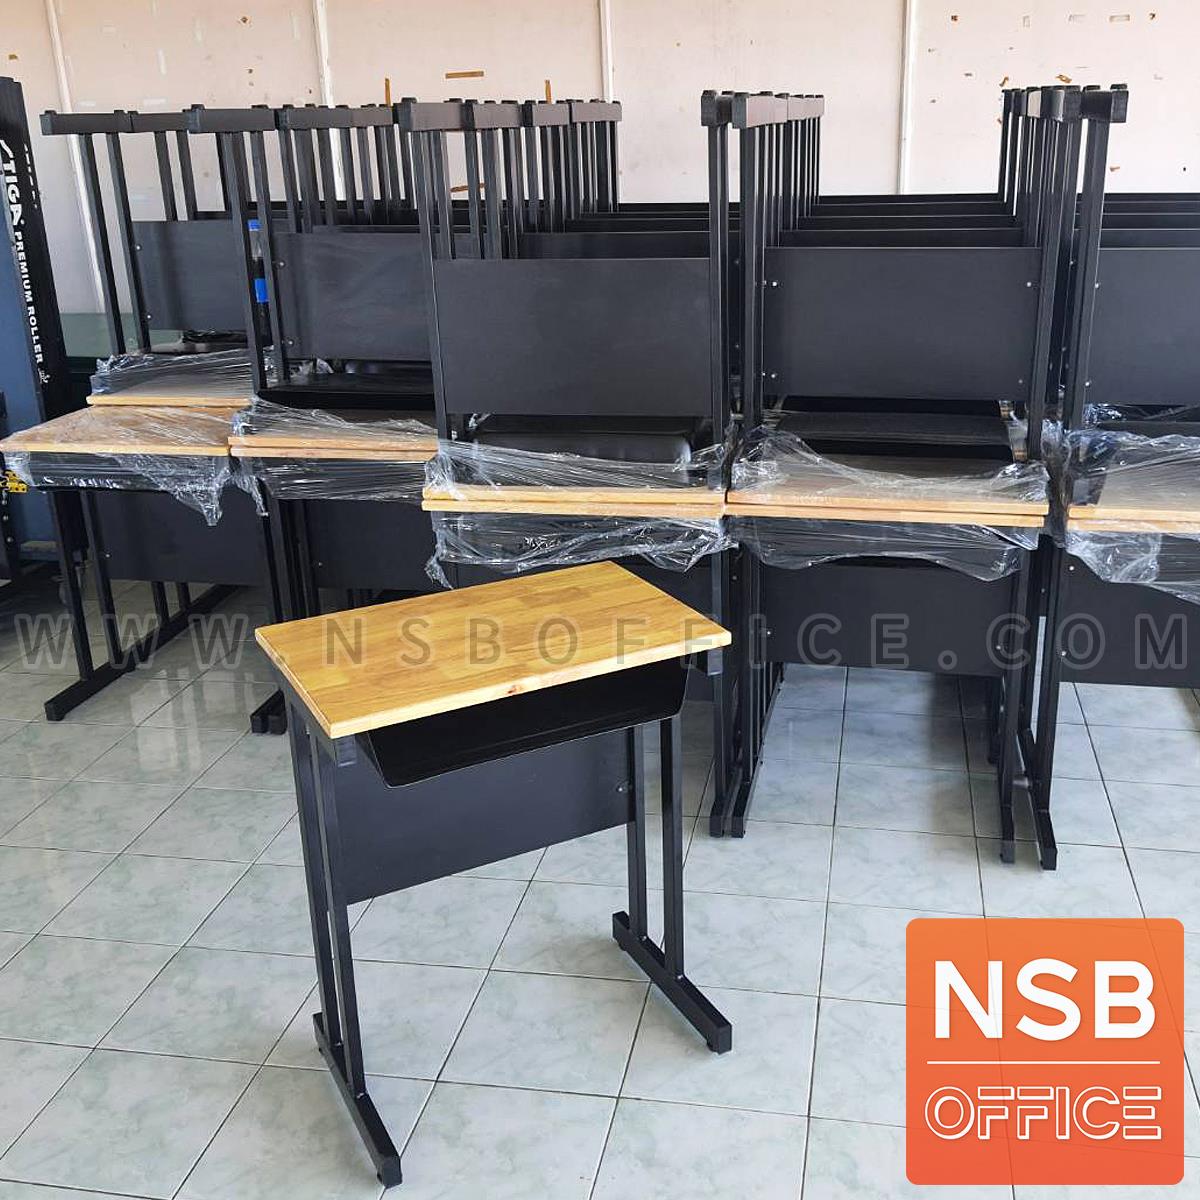 ชุดโต๊ะและเก้าอี้นักเรียน  รุ่น KN-5330  ระดับประถม-มัธยม